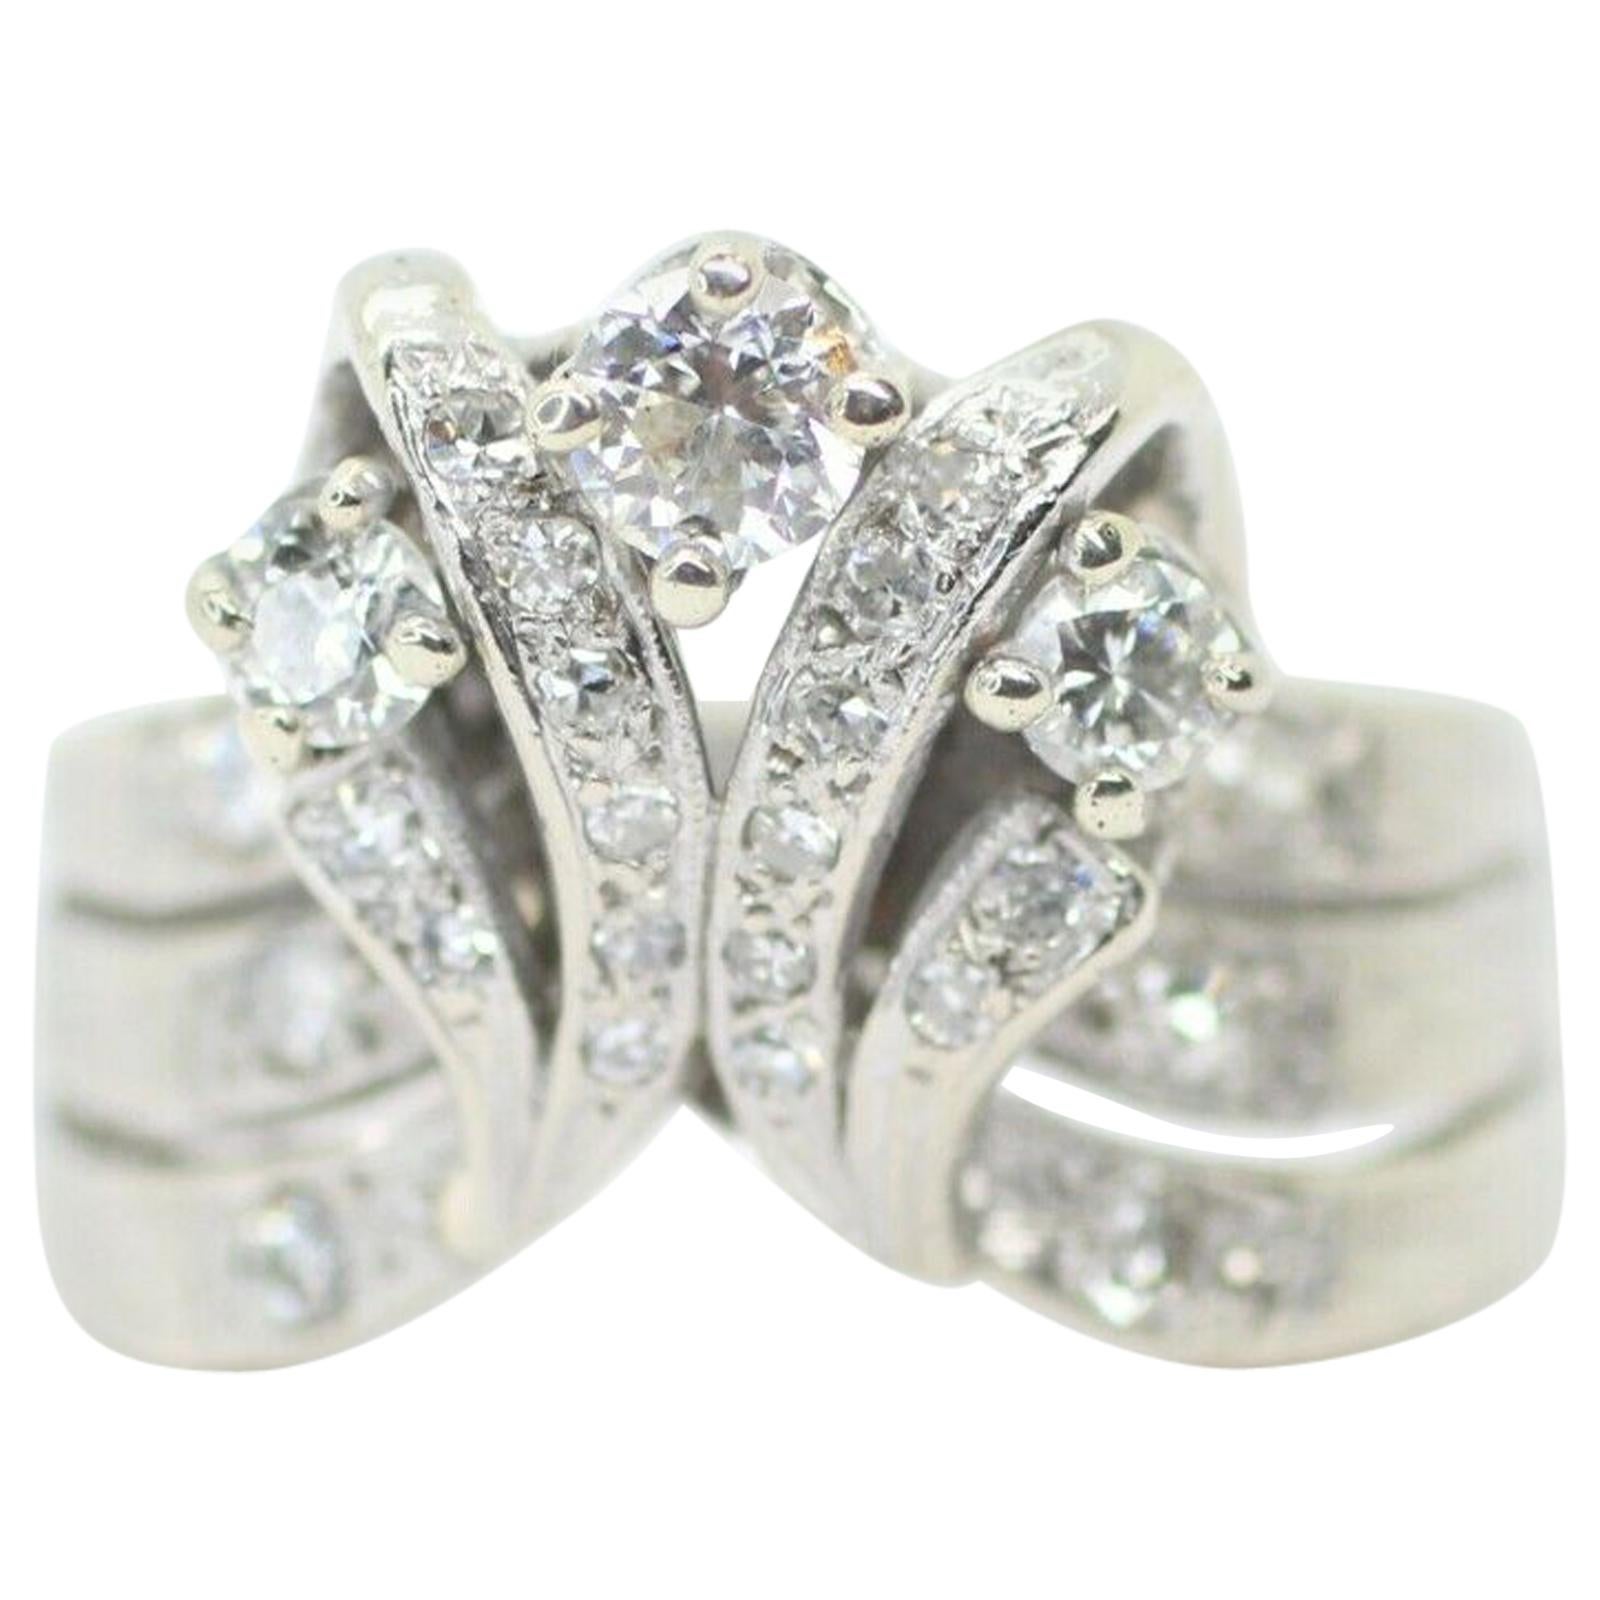 Vintage 14k White Gold Diamond Cluster Ring